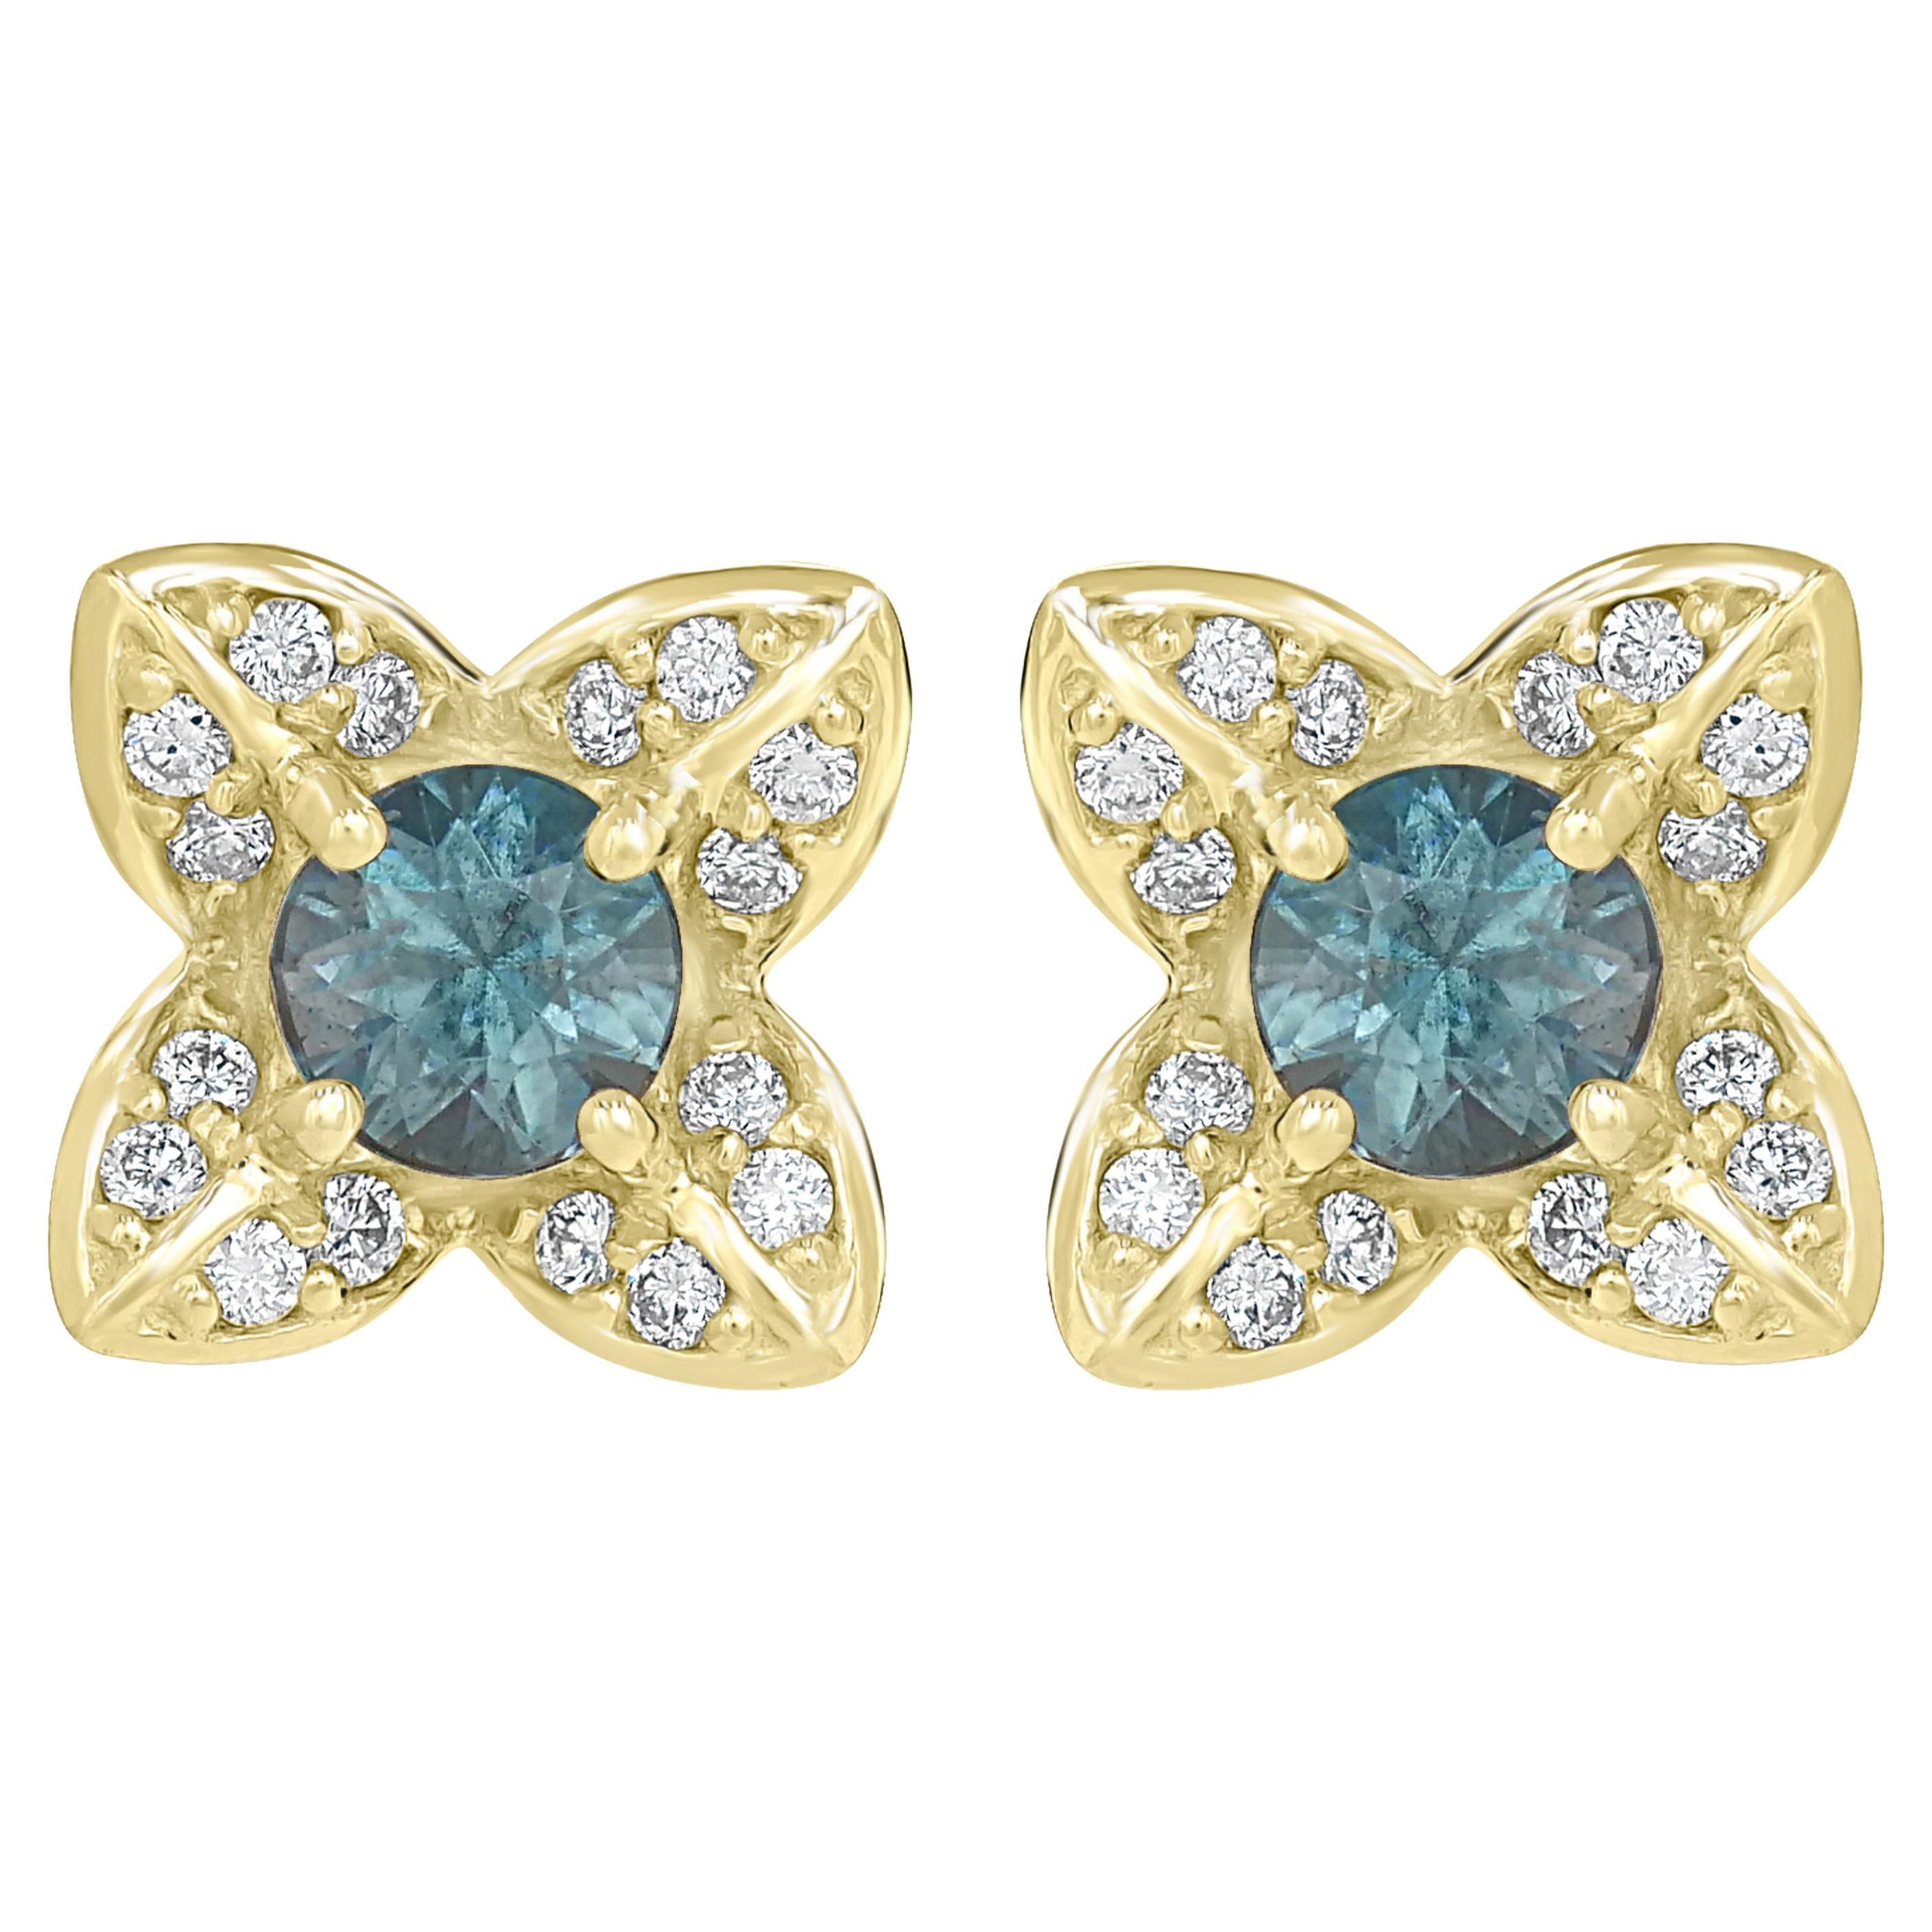 Gemistry 0.87 Ct. T.W. Blue Zircon and Diamond Stud Earrings in 14K Yellow Gold